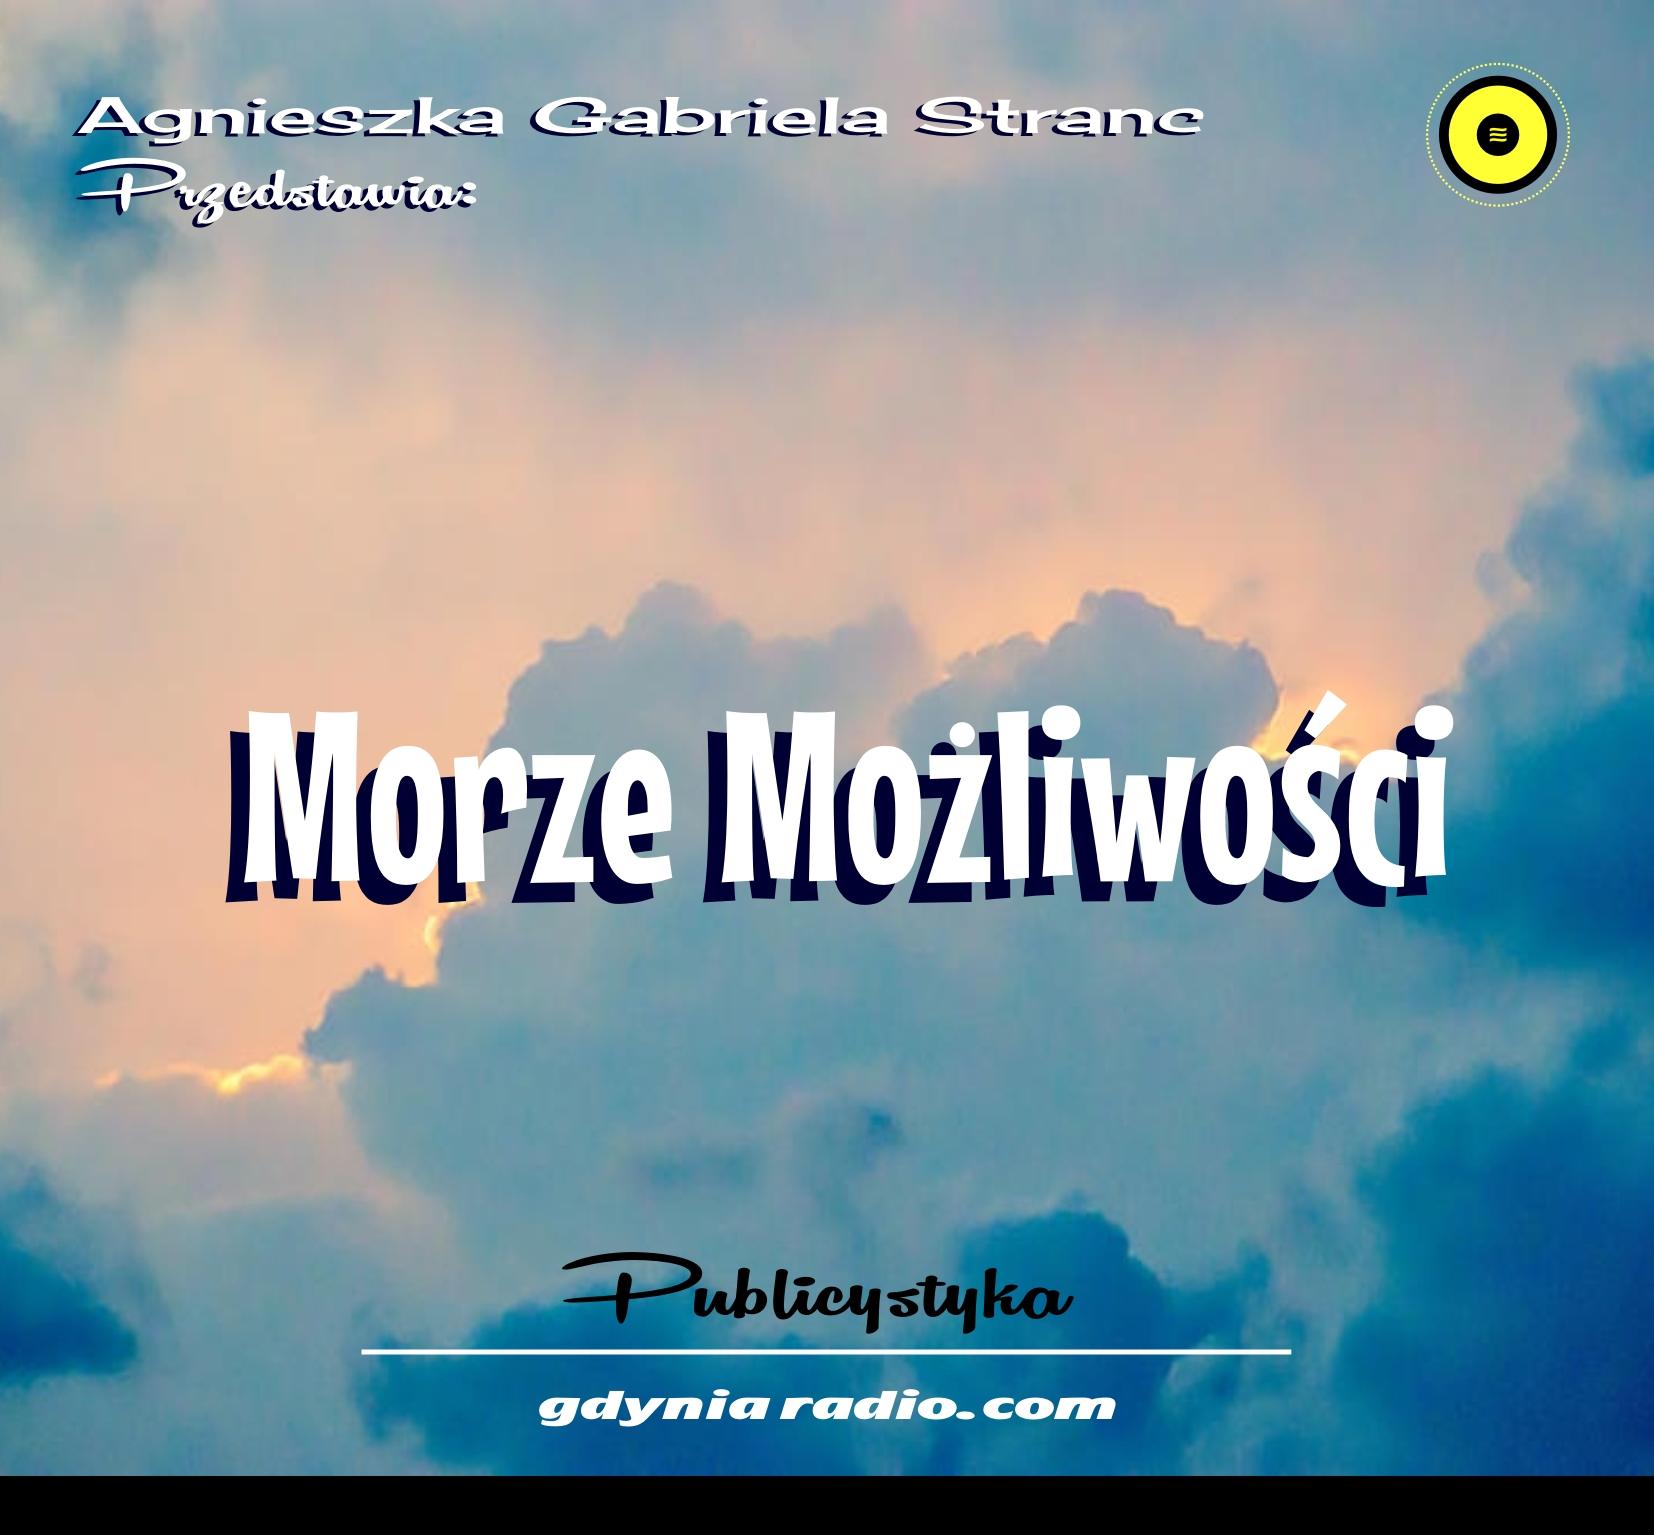 Gdynia Radio 2021 Moze mozliwosci 5 Agnieszka Stranc zzz Home Copy 2021 11 12